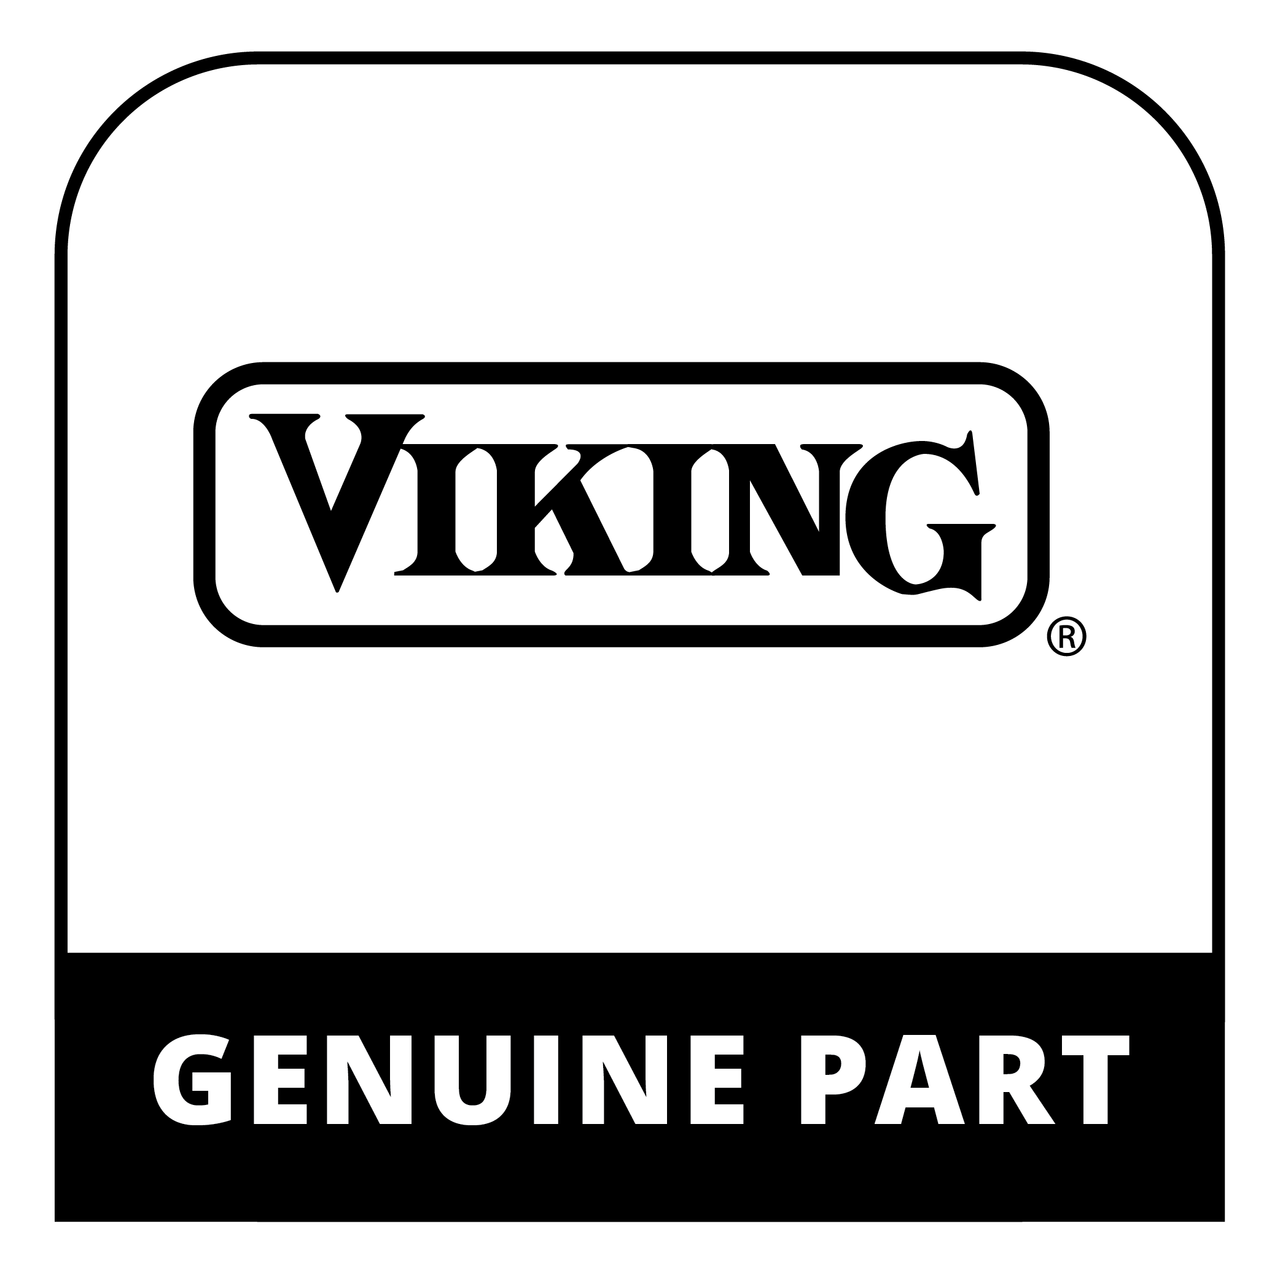 Viking 058833-000 - Sprt, Light, 36 - Genuine Viking Part